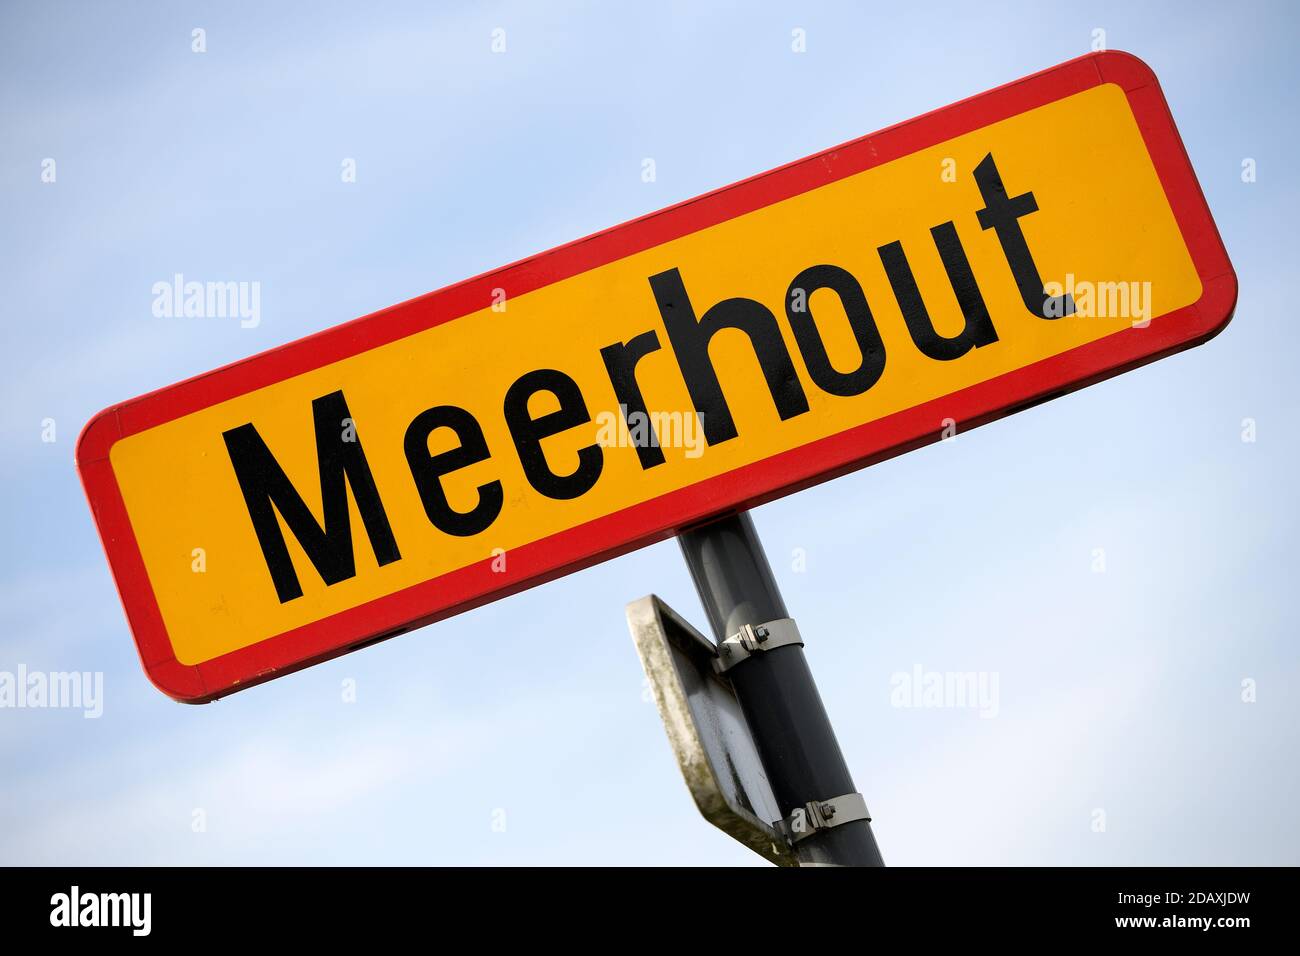 Abbildung zeigt den Namen der Gemeinde Meerhout auf einem Straßenschild, Freitag, 21. September 2018. BELGA FOTO YORICK JANSENS Stockfoto